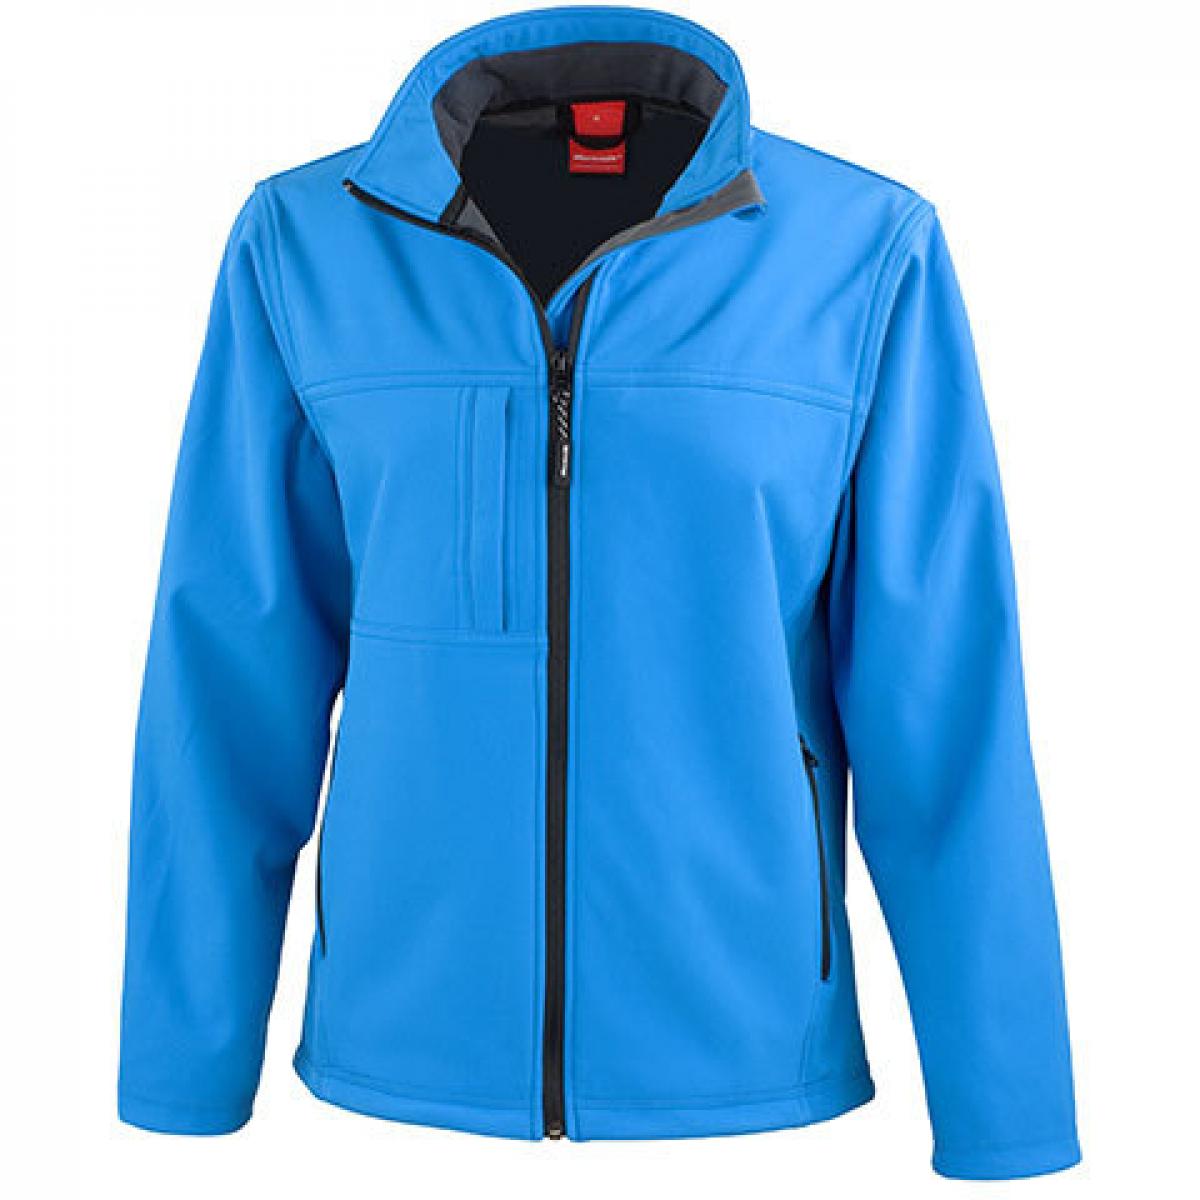 Hersteller: Result Herstellernummer: R121F Artikelbezeichnung: Ladies Classic Soft Shell Jacket Farbe: Azure